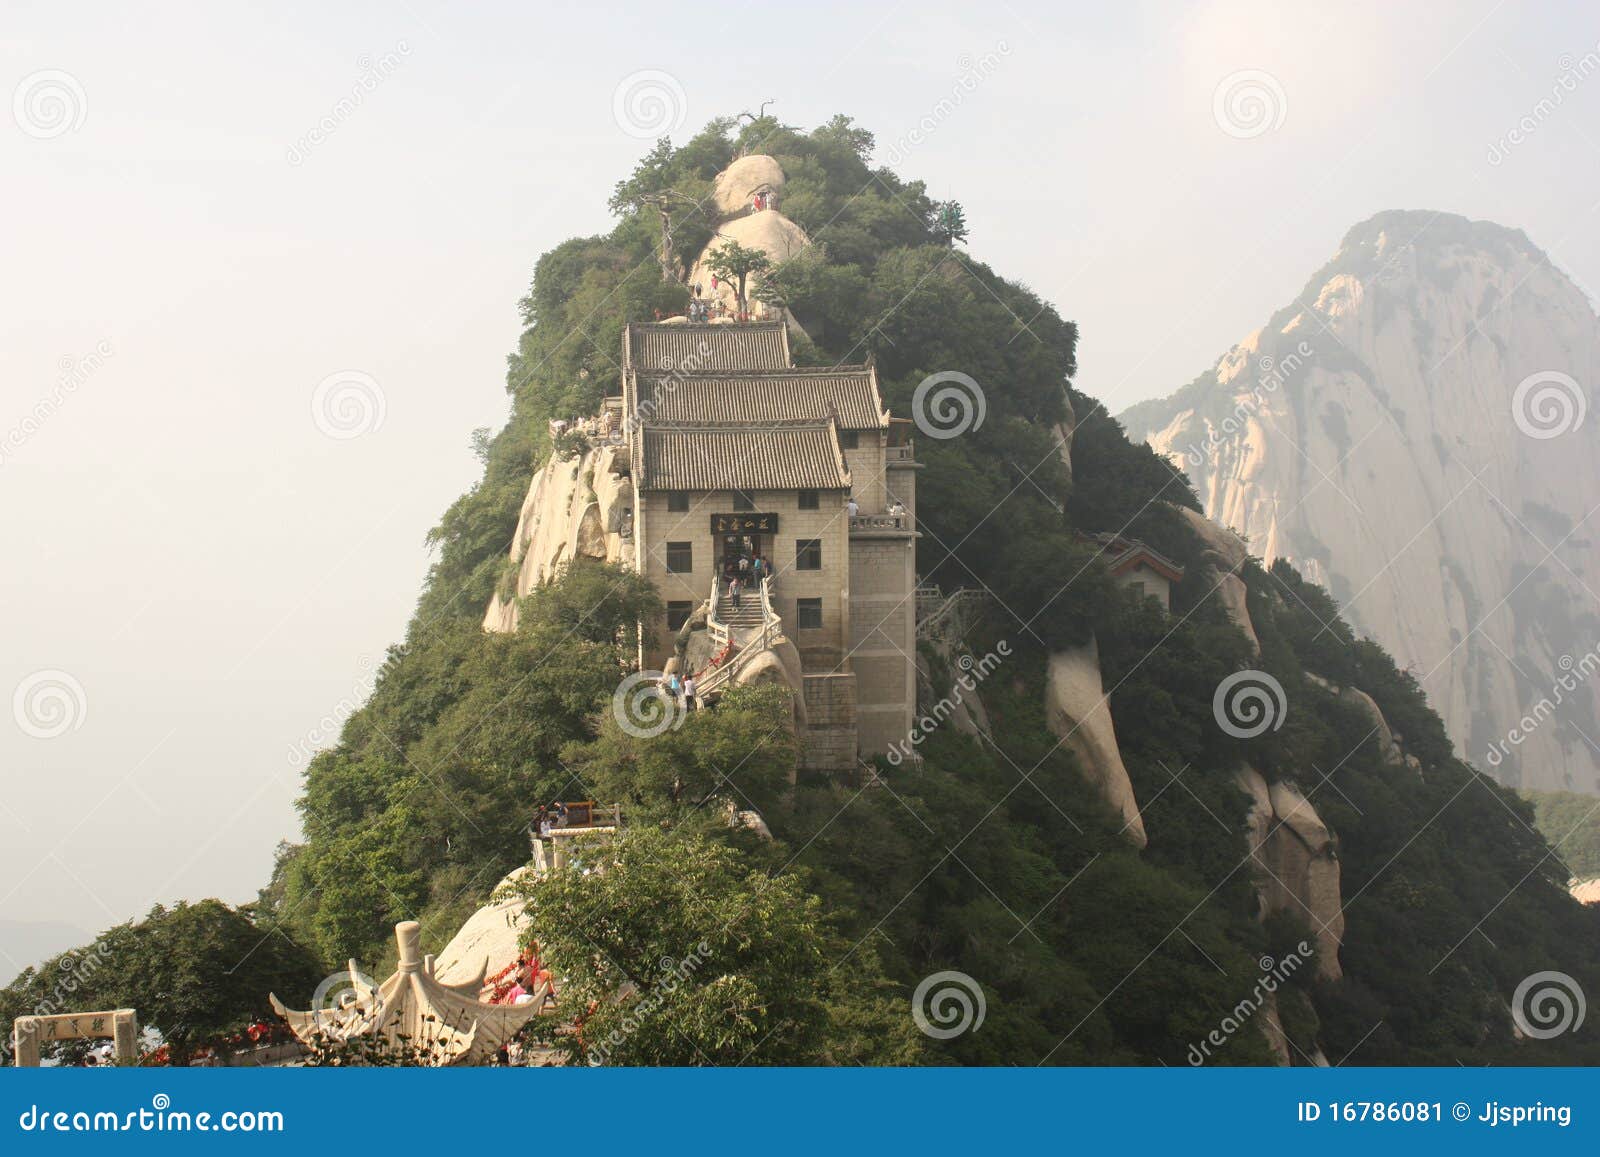 pavilion at hua shan mountain in china